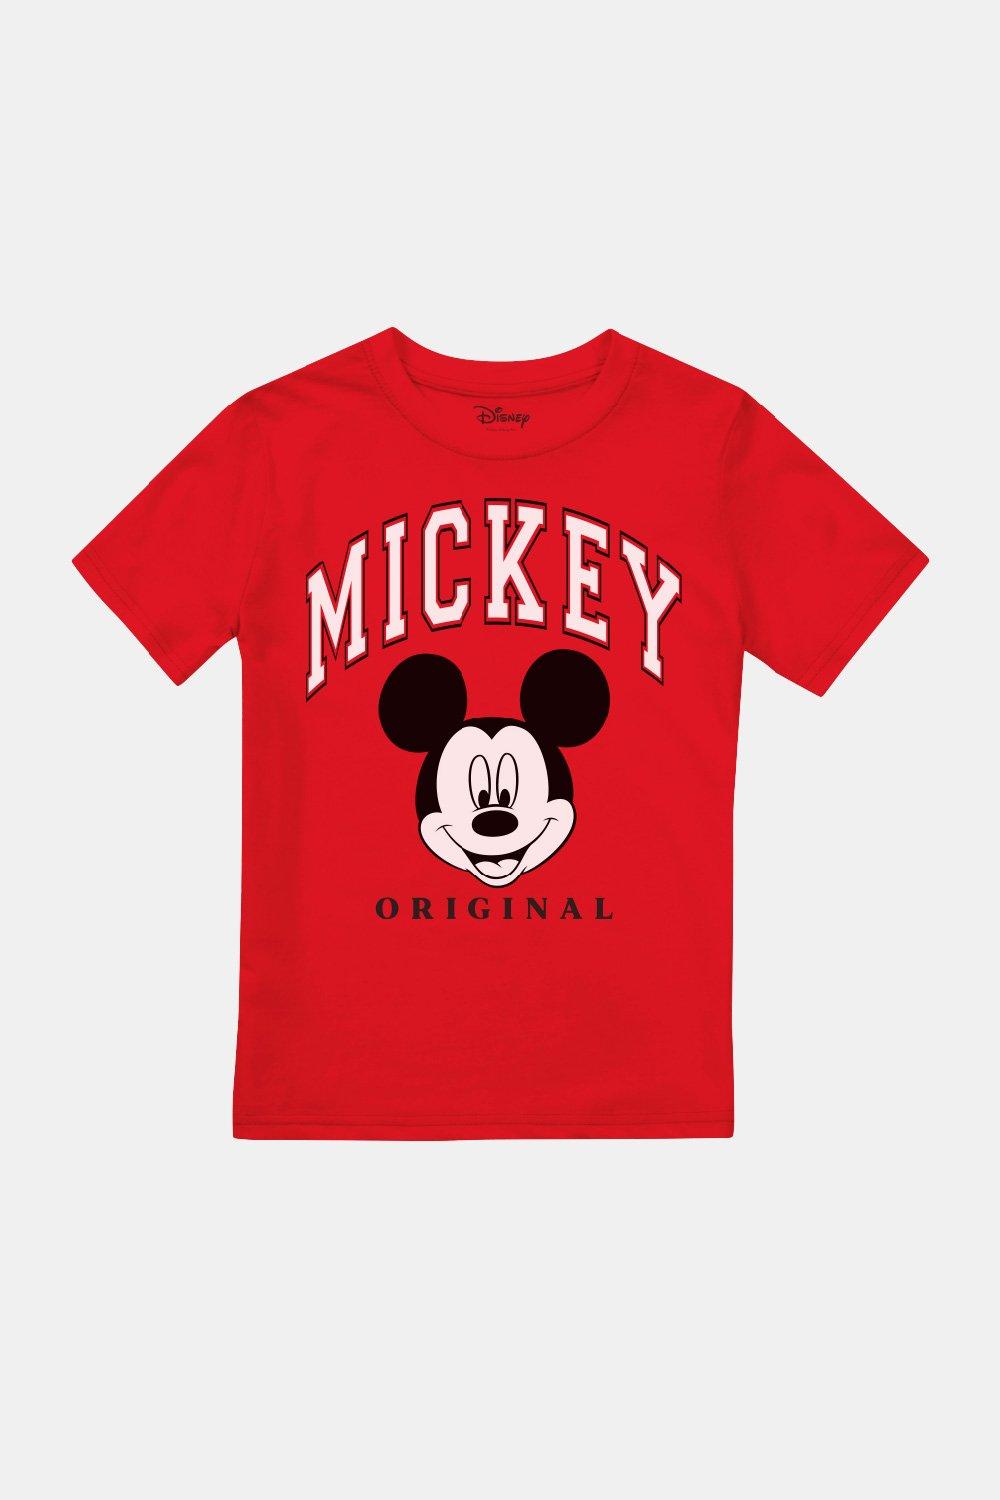 Оригинальная футболка с Микки Маусом для мальчиков Disney, красный длинный шнурок из абс пластика с мультяшными героями диснея микки маус минни дональд утка для студенческого кампуса